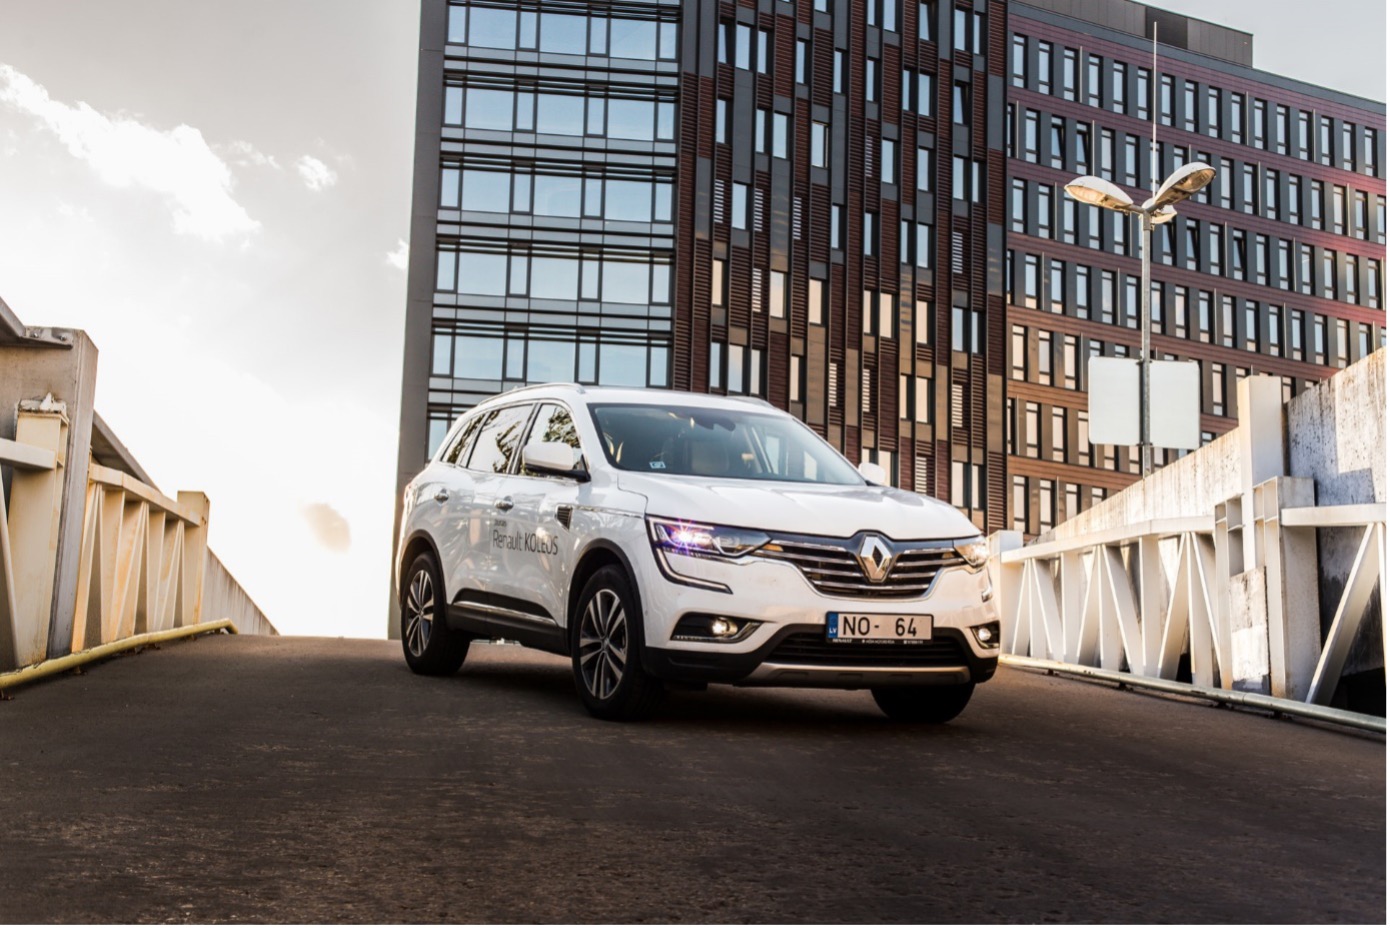 Jakiej produkcji jest Renault? Czy to trwałe i dobre samochody?